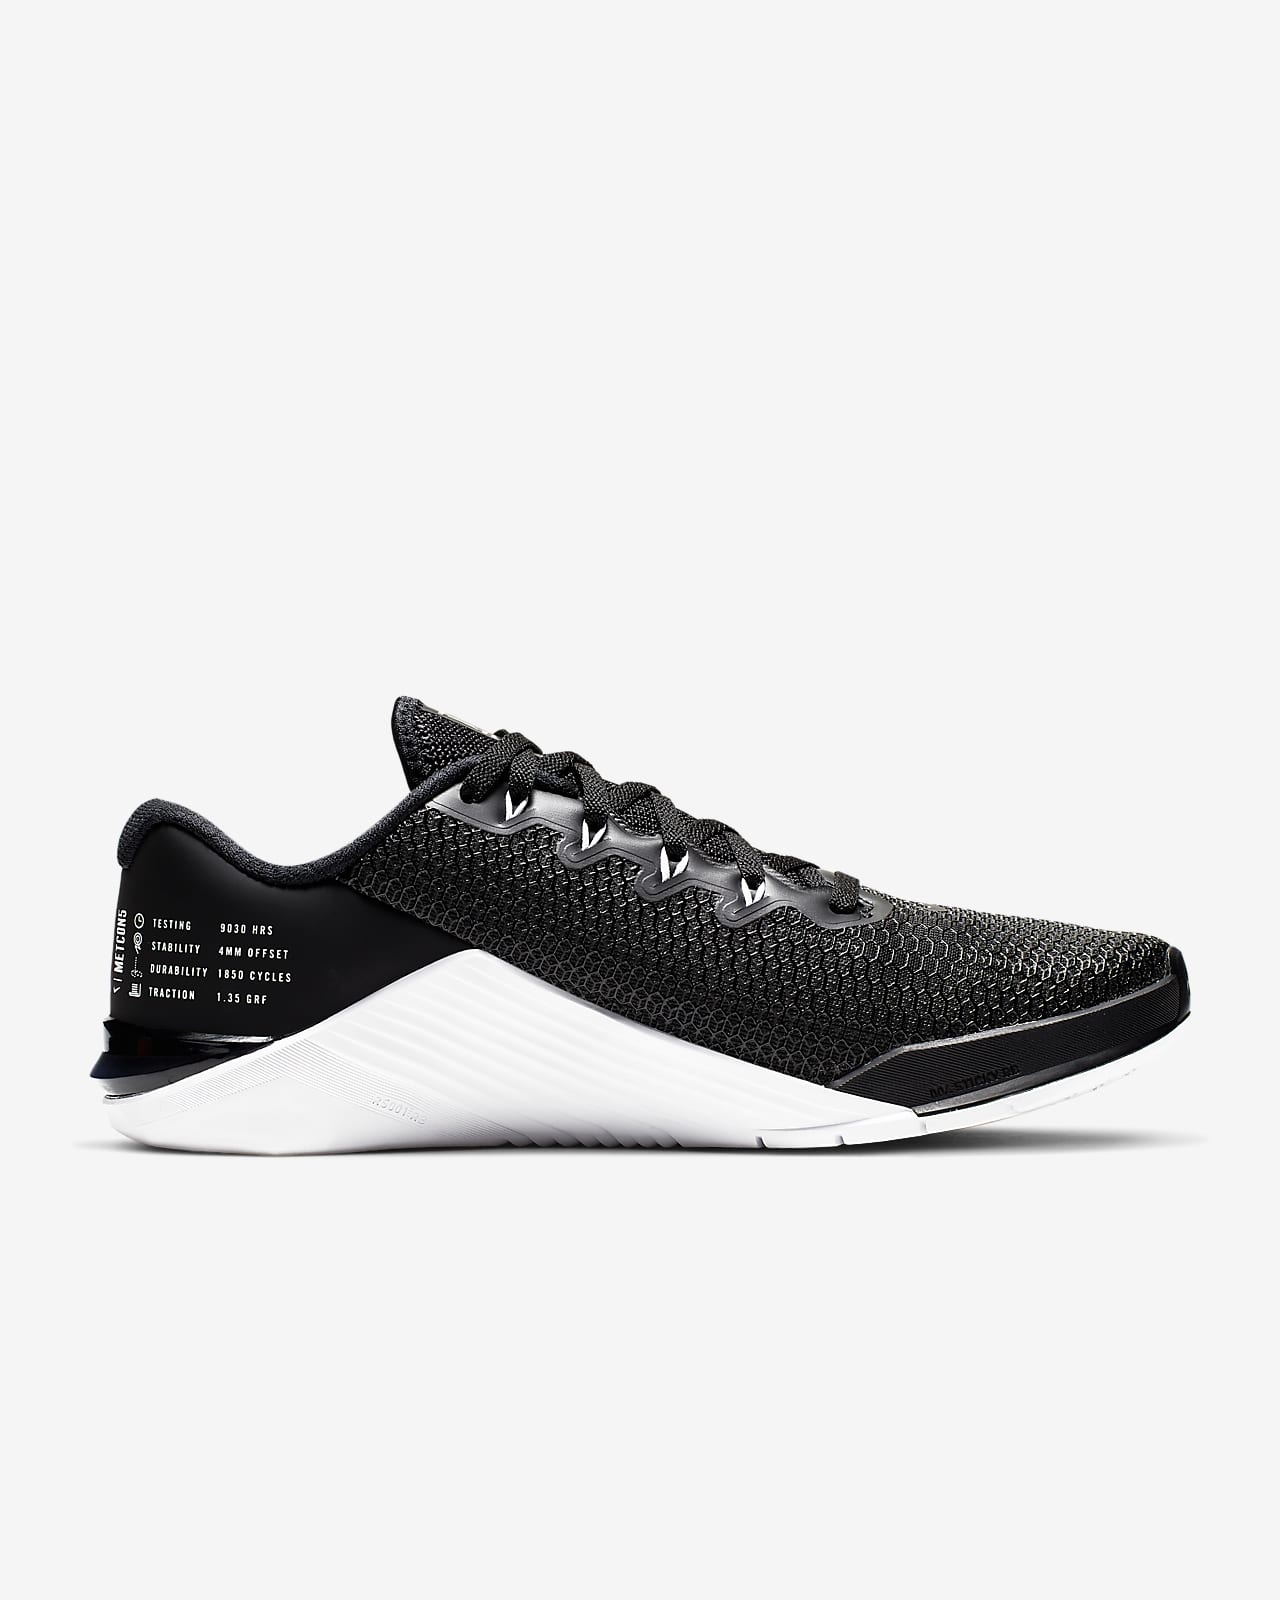 Training Shoe. Nike NZ